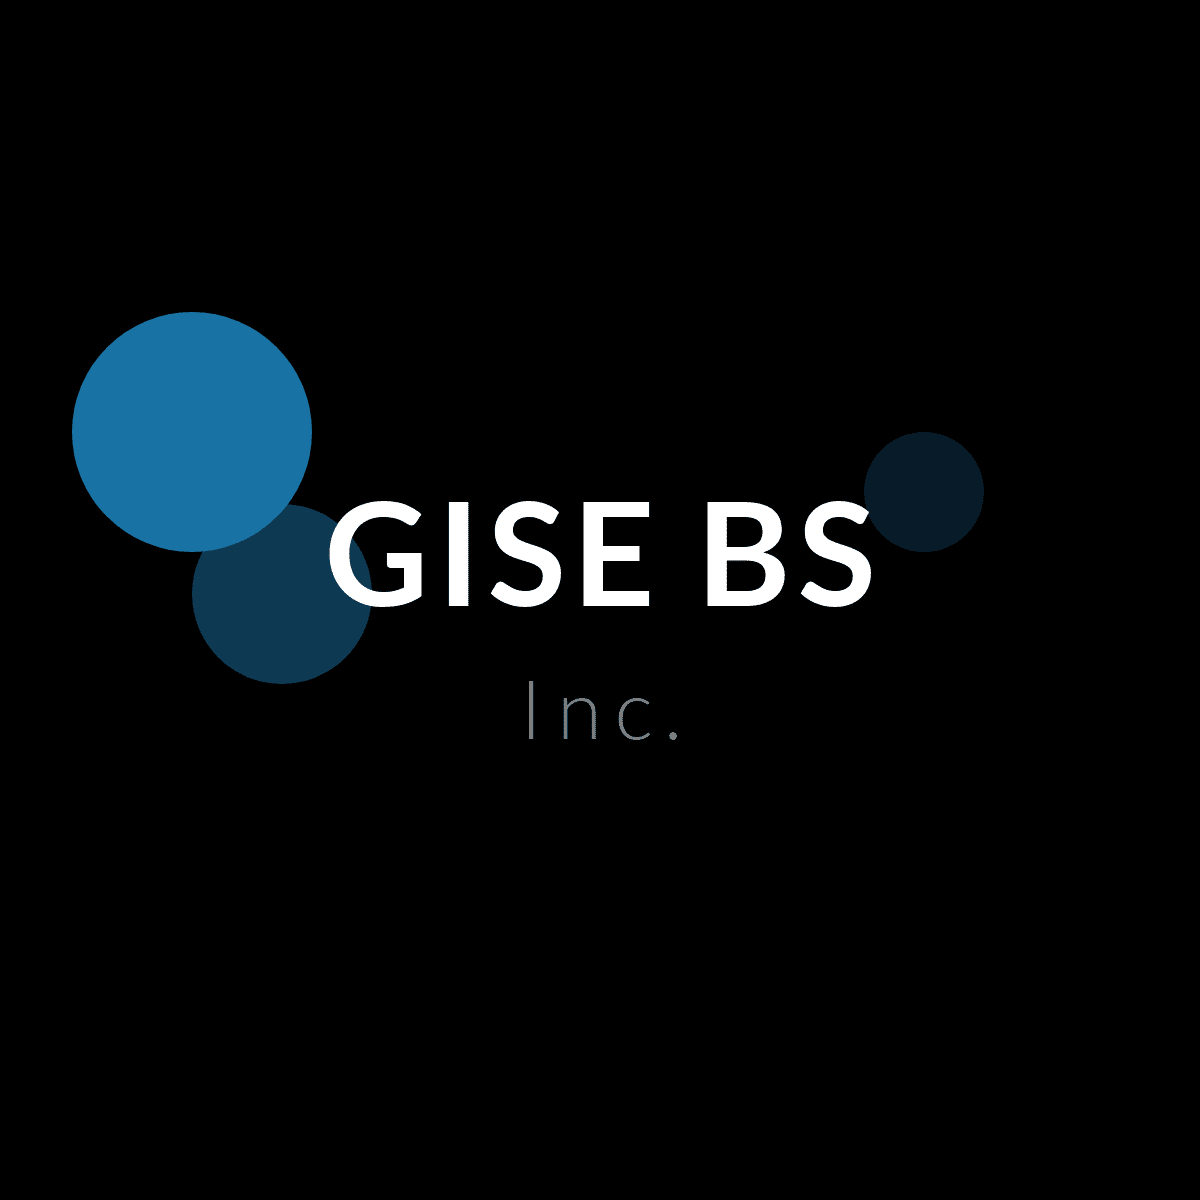 Groupe GISEBS Inc à Québec offrant des services et/ou produit tel que Développement logiciel, Design web, Service conseil fait partie du répertoire de PME d'ICI un répertoire que propulse gratuitement les entreprises Québécois.